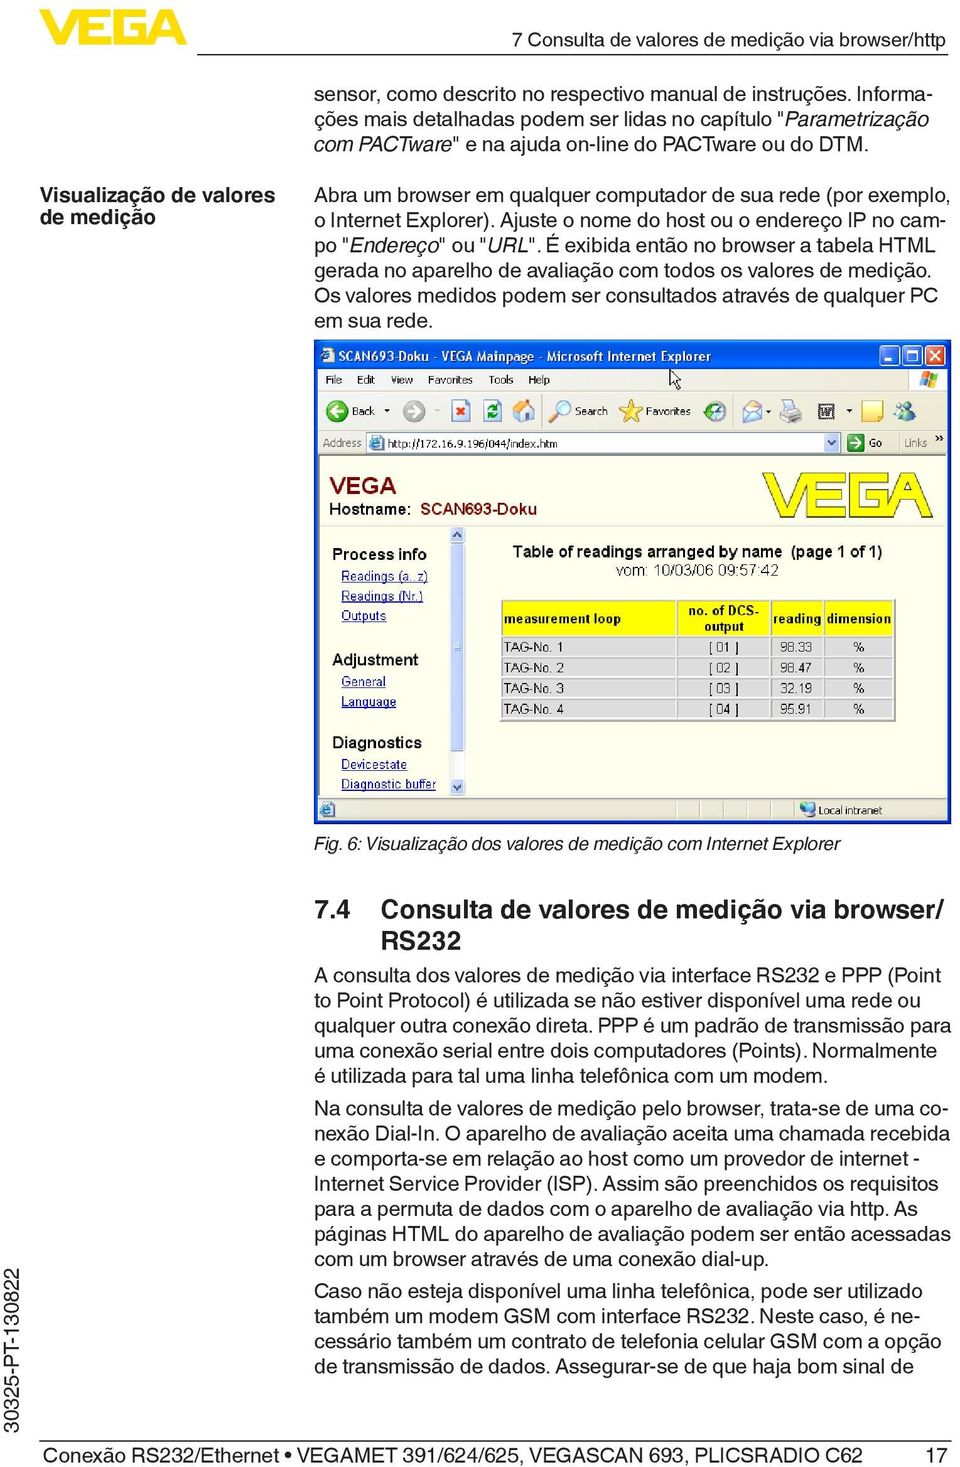 Visualização de valores de medição Abra um browser em qualquer computador de sua rede (por exemplo, o Internet Explorer). Ajuste o nome do host ou o endereço IP no campo "Endereço" ou "URL".